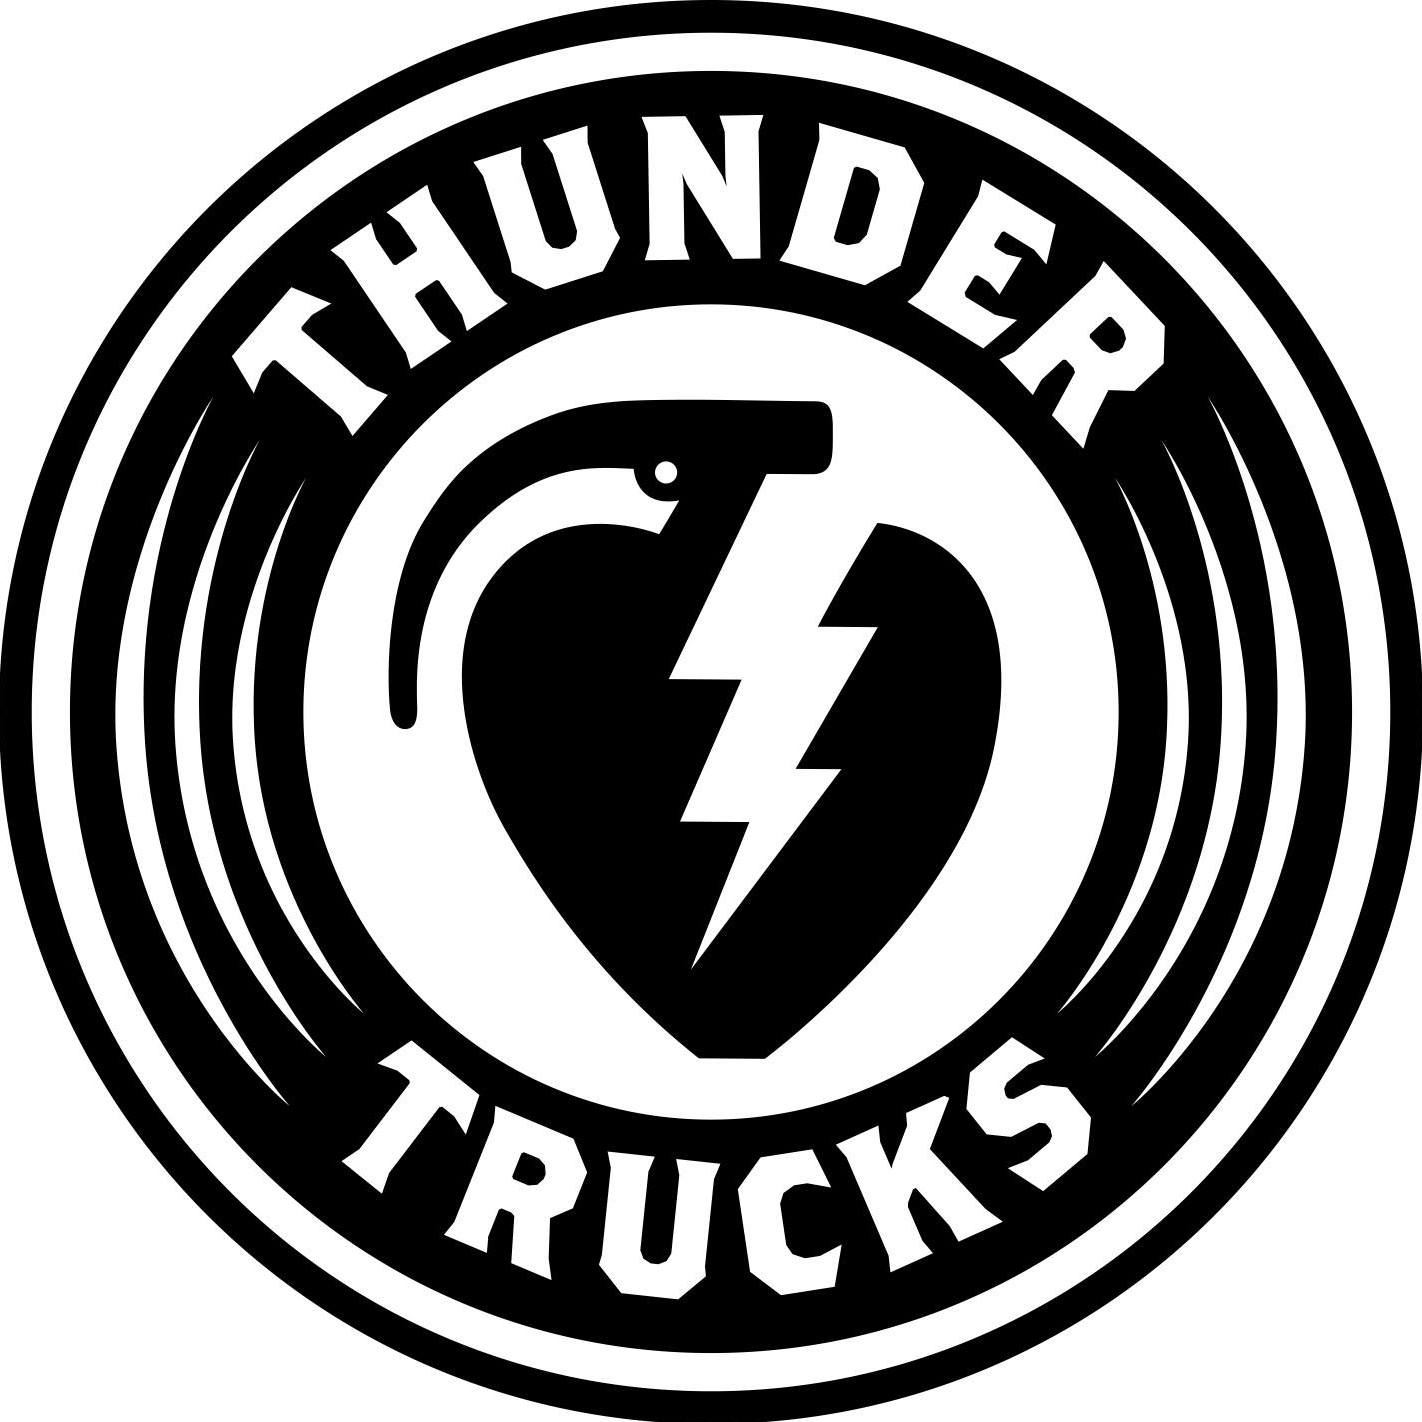 썬더 트럭(Thunder Trucks) 로고